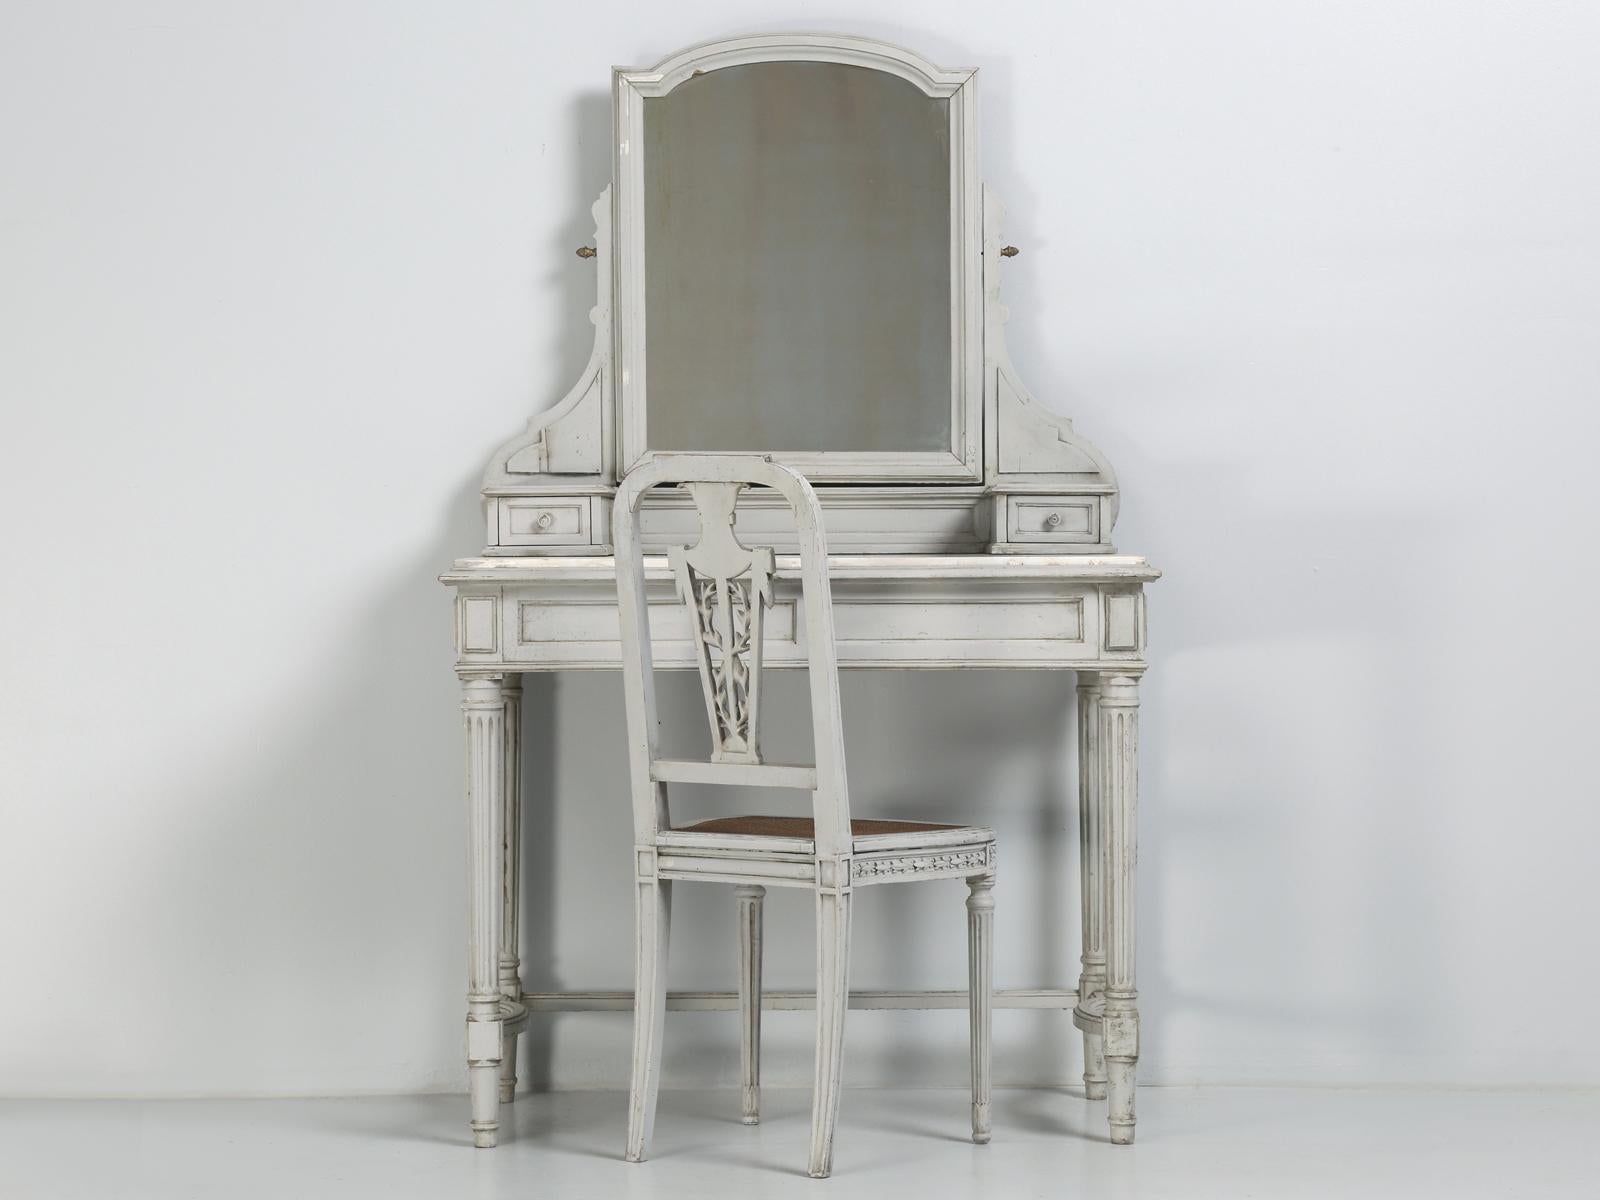 Antiker französischer Frisiertisch im Louis XVI-Stil mit passendem Stuhl, beide noch unglaublich originalgetreu lackiert. Der antike französische Schminktisch im Louis XVI-Stil hat eine originale Platte aus Carrara-Marmor und einen Spiegel. 
Die